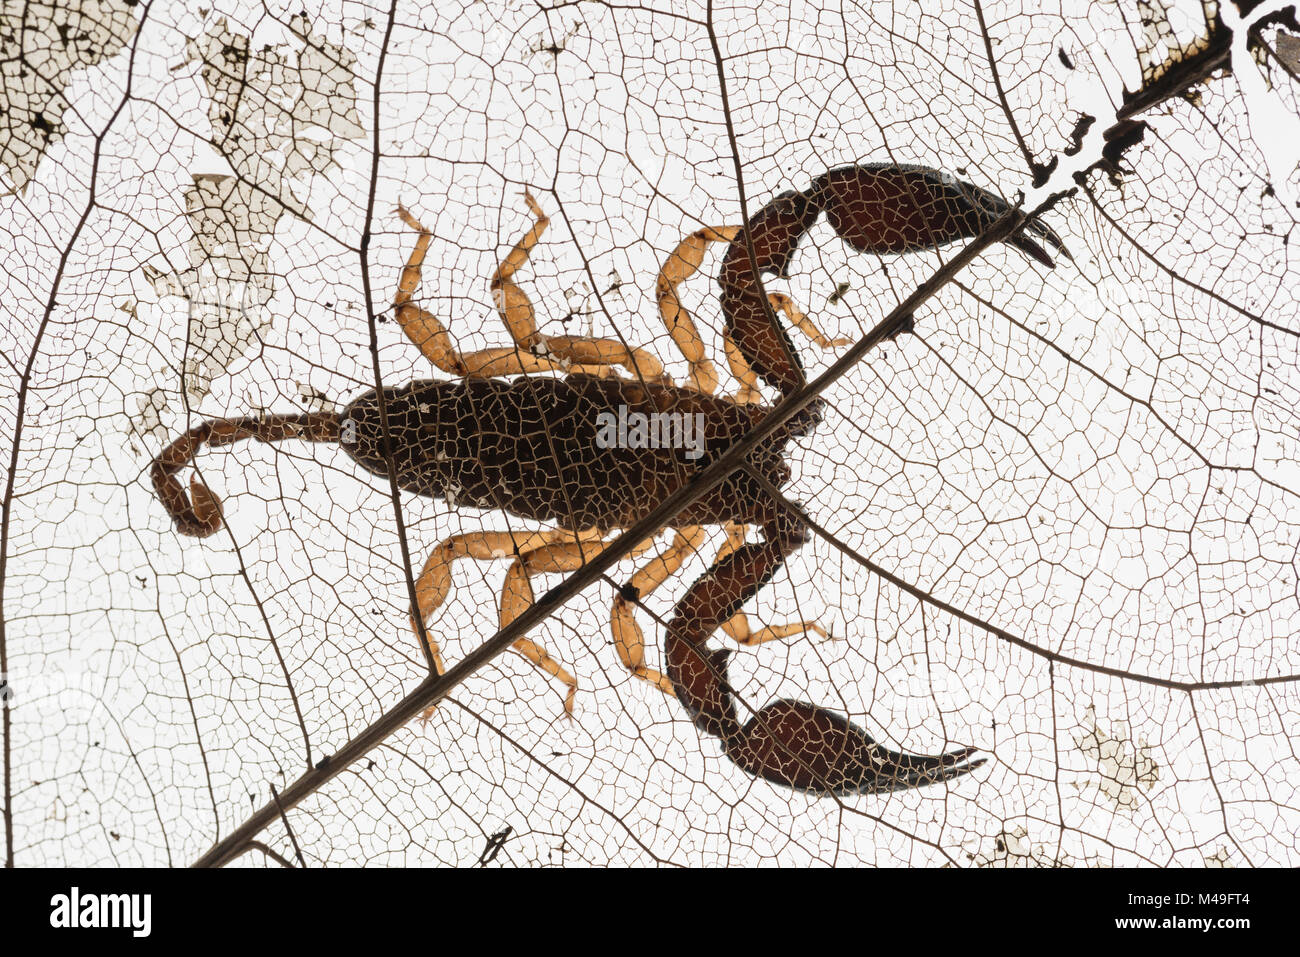 Rainforest scorpion, Queensland, Australie. Banque D'Images